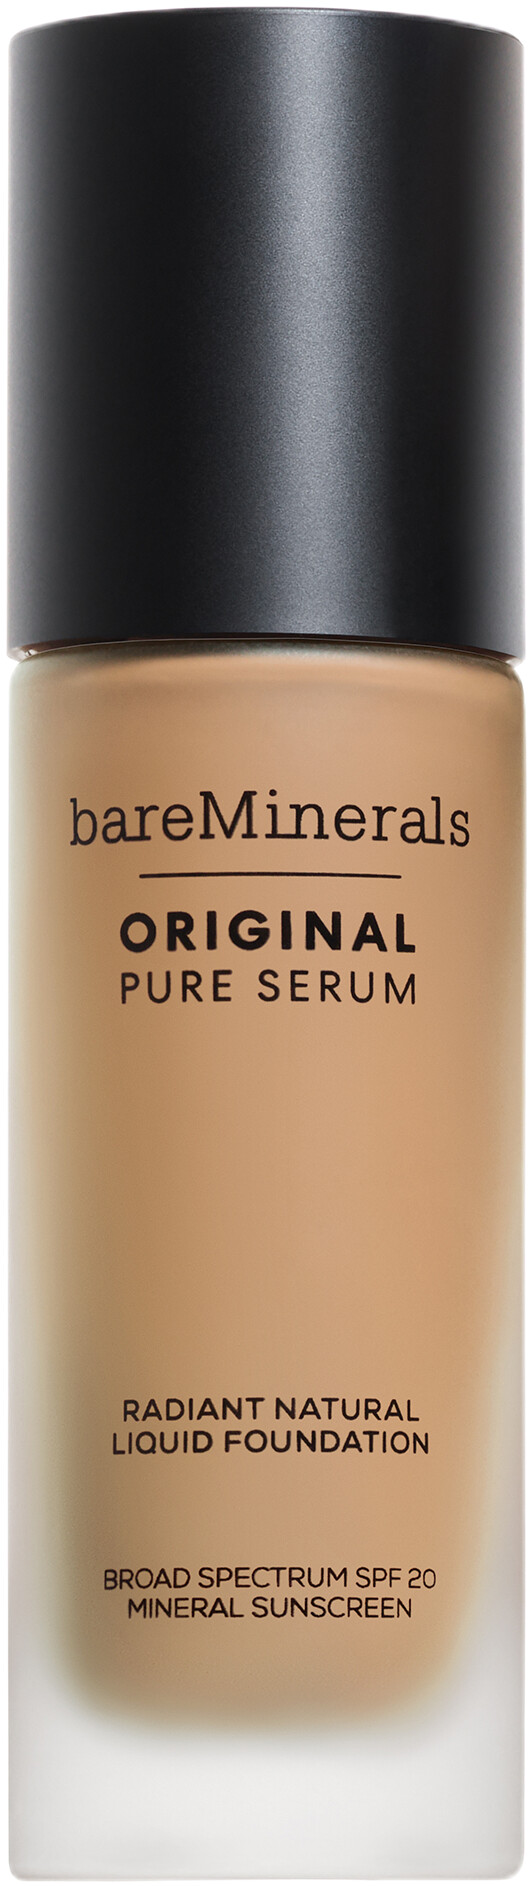 bareMinerals Original Pure Serum Radiant Natural Liquid Foundation SPF20 30ml 3 - Medium Neutral